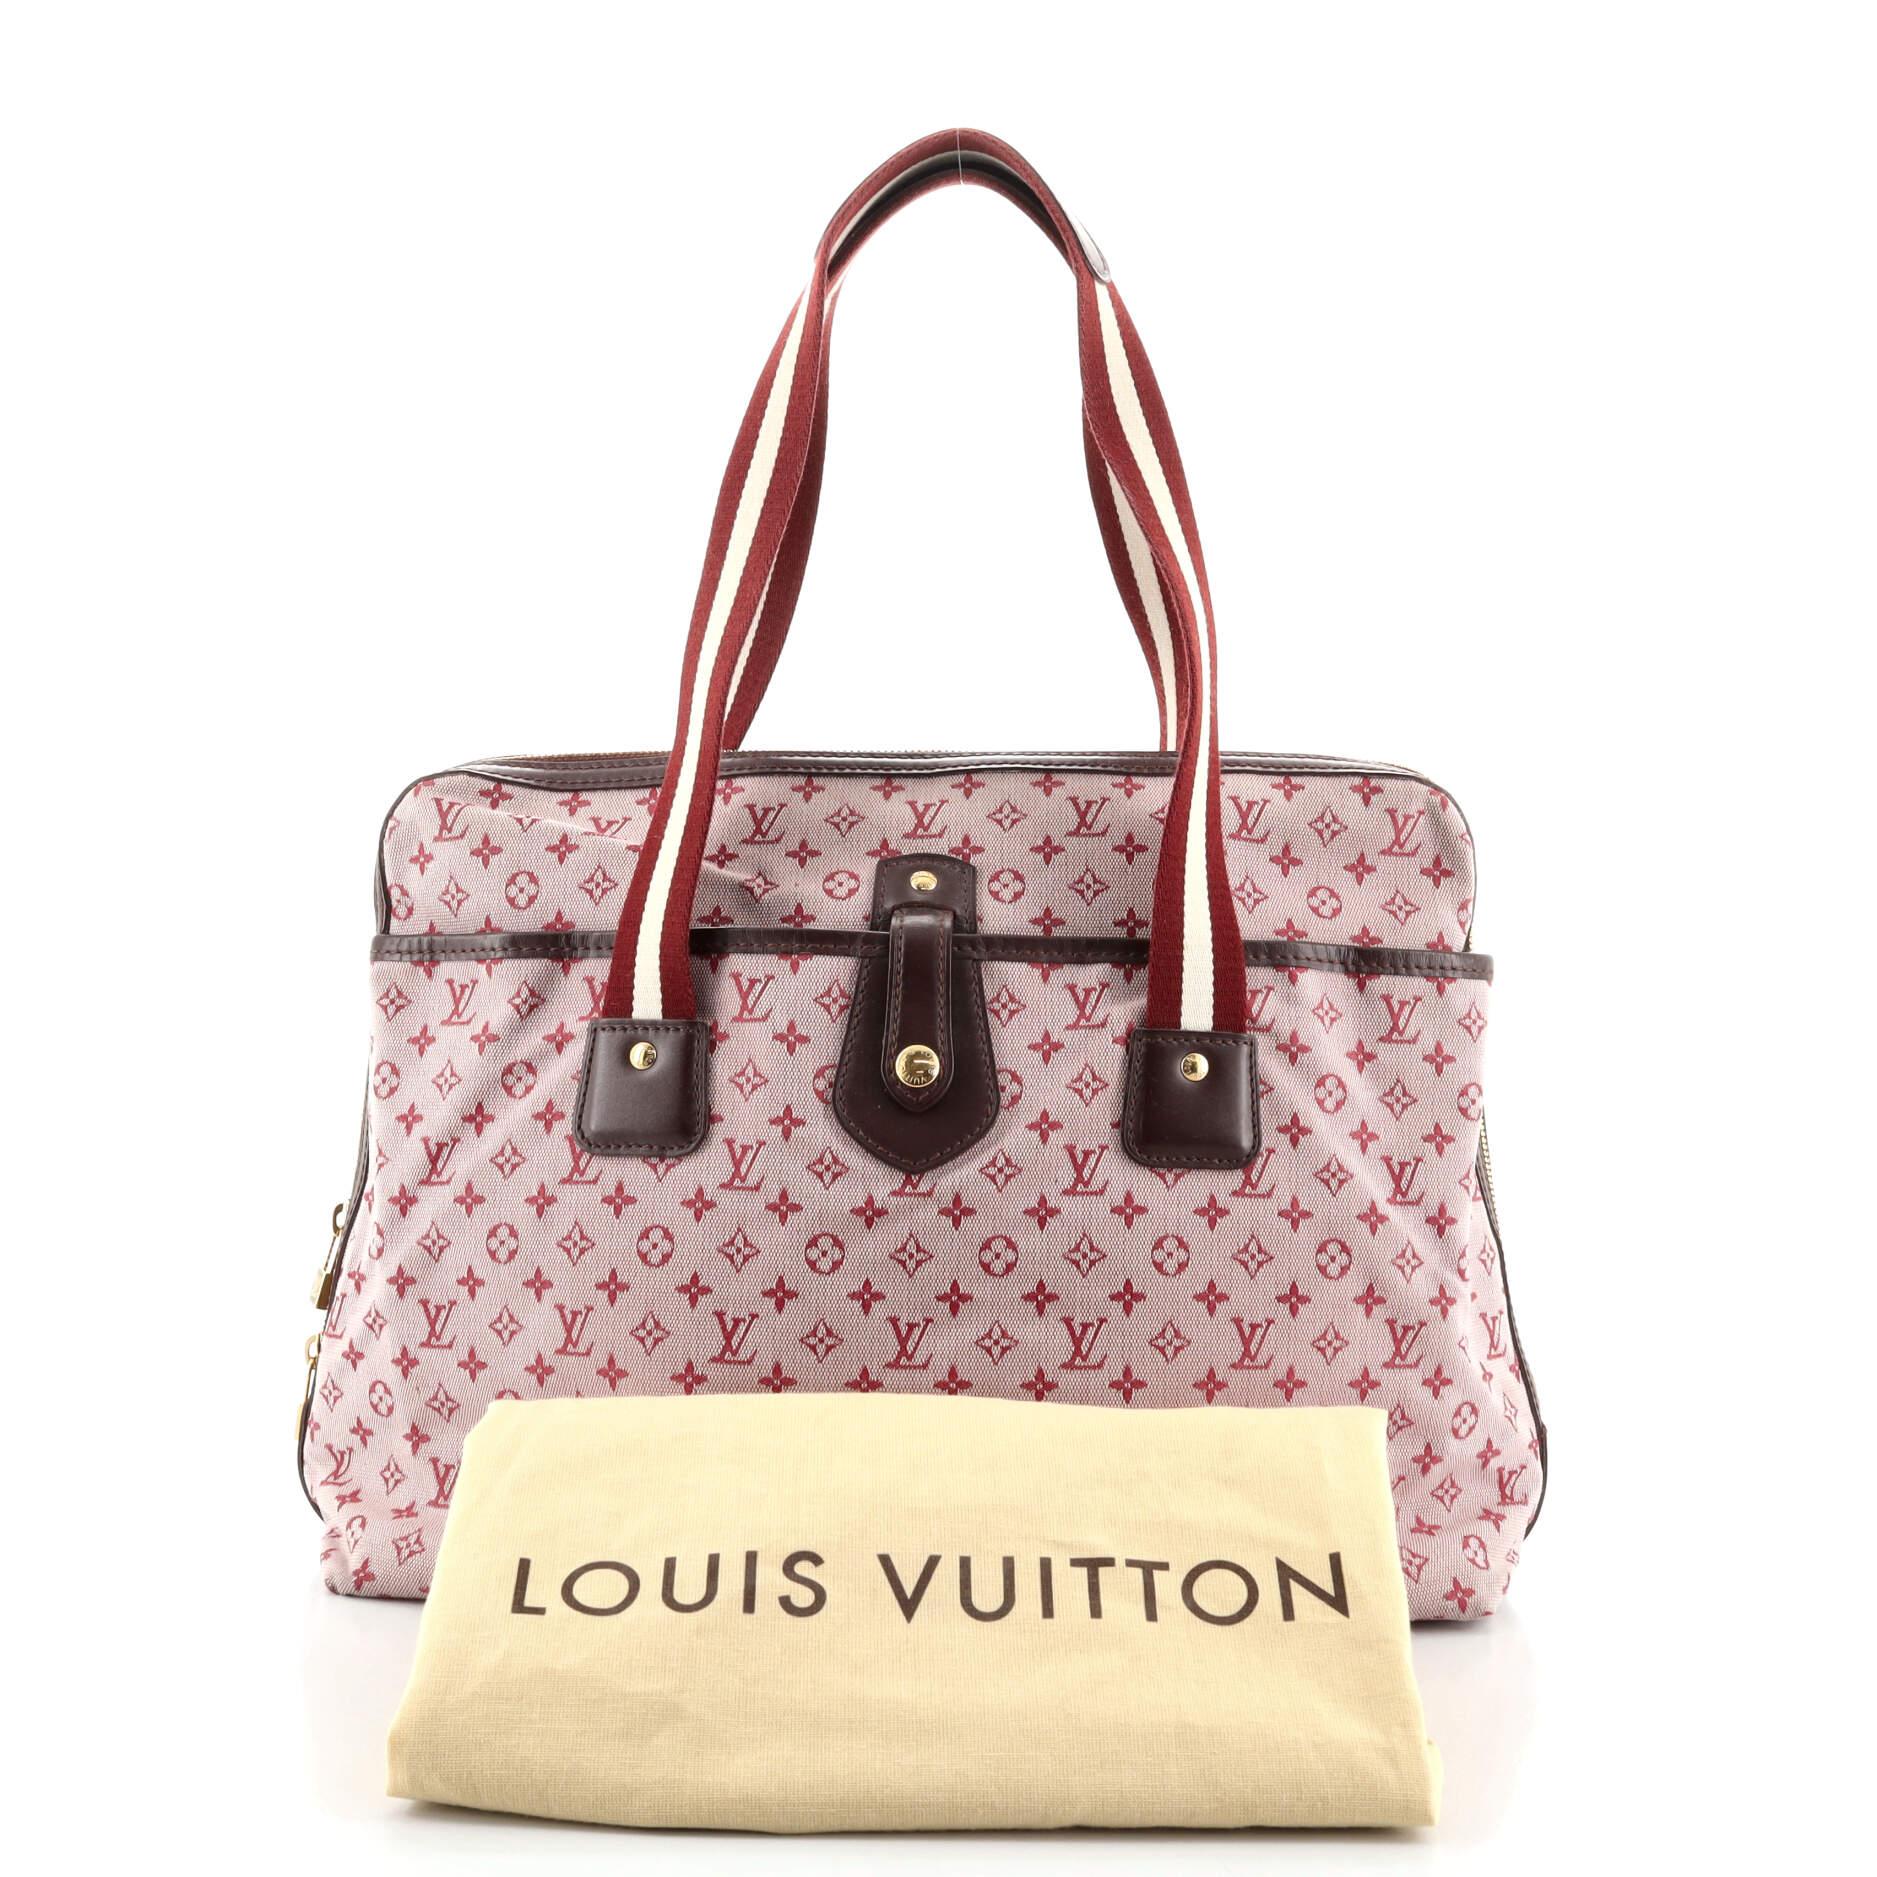 Sold at Auction: Louis Vuitton, Louis Vuitton Beige/Navy Mini Lin